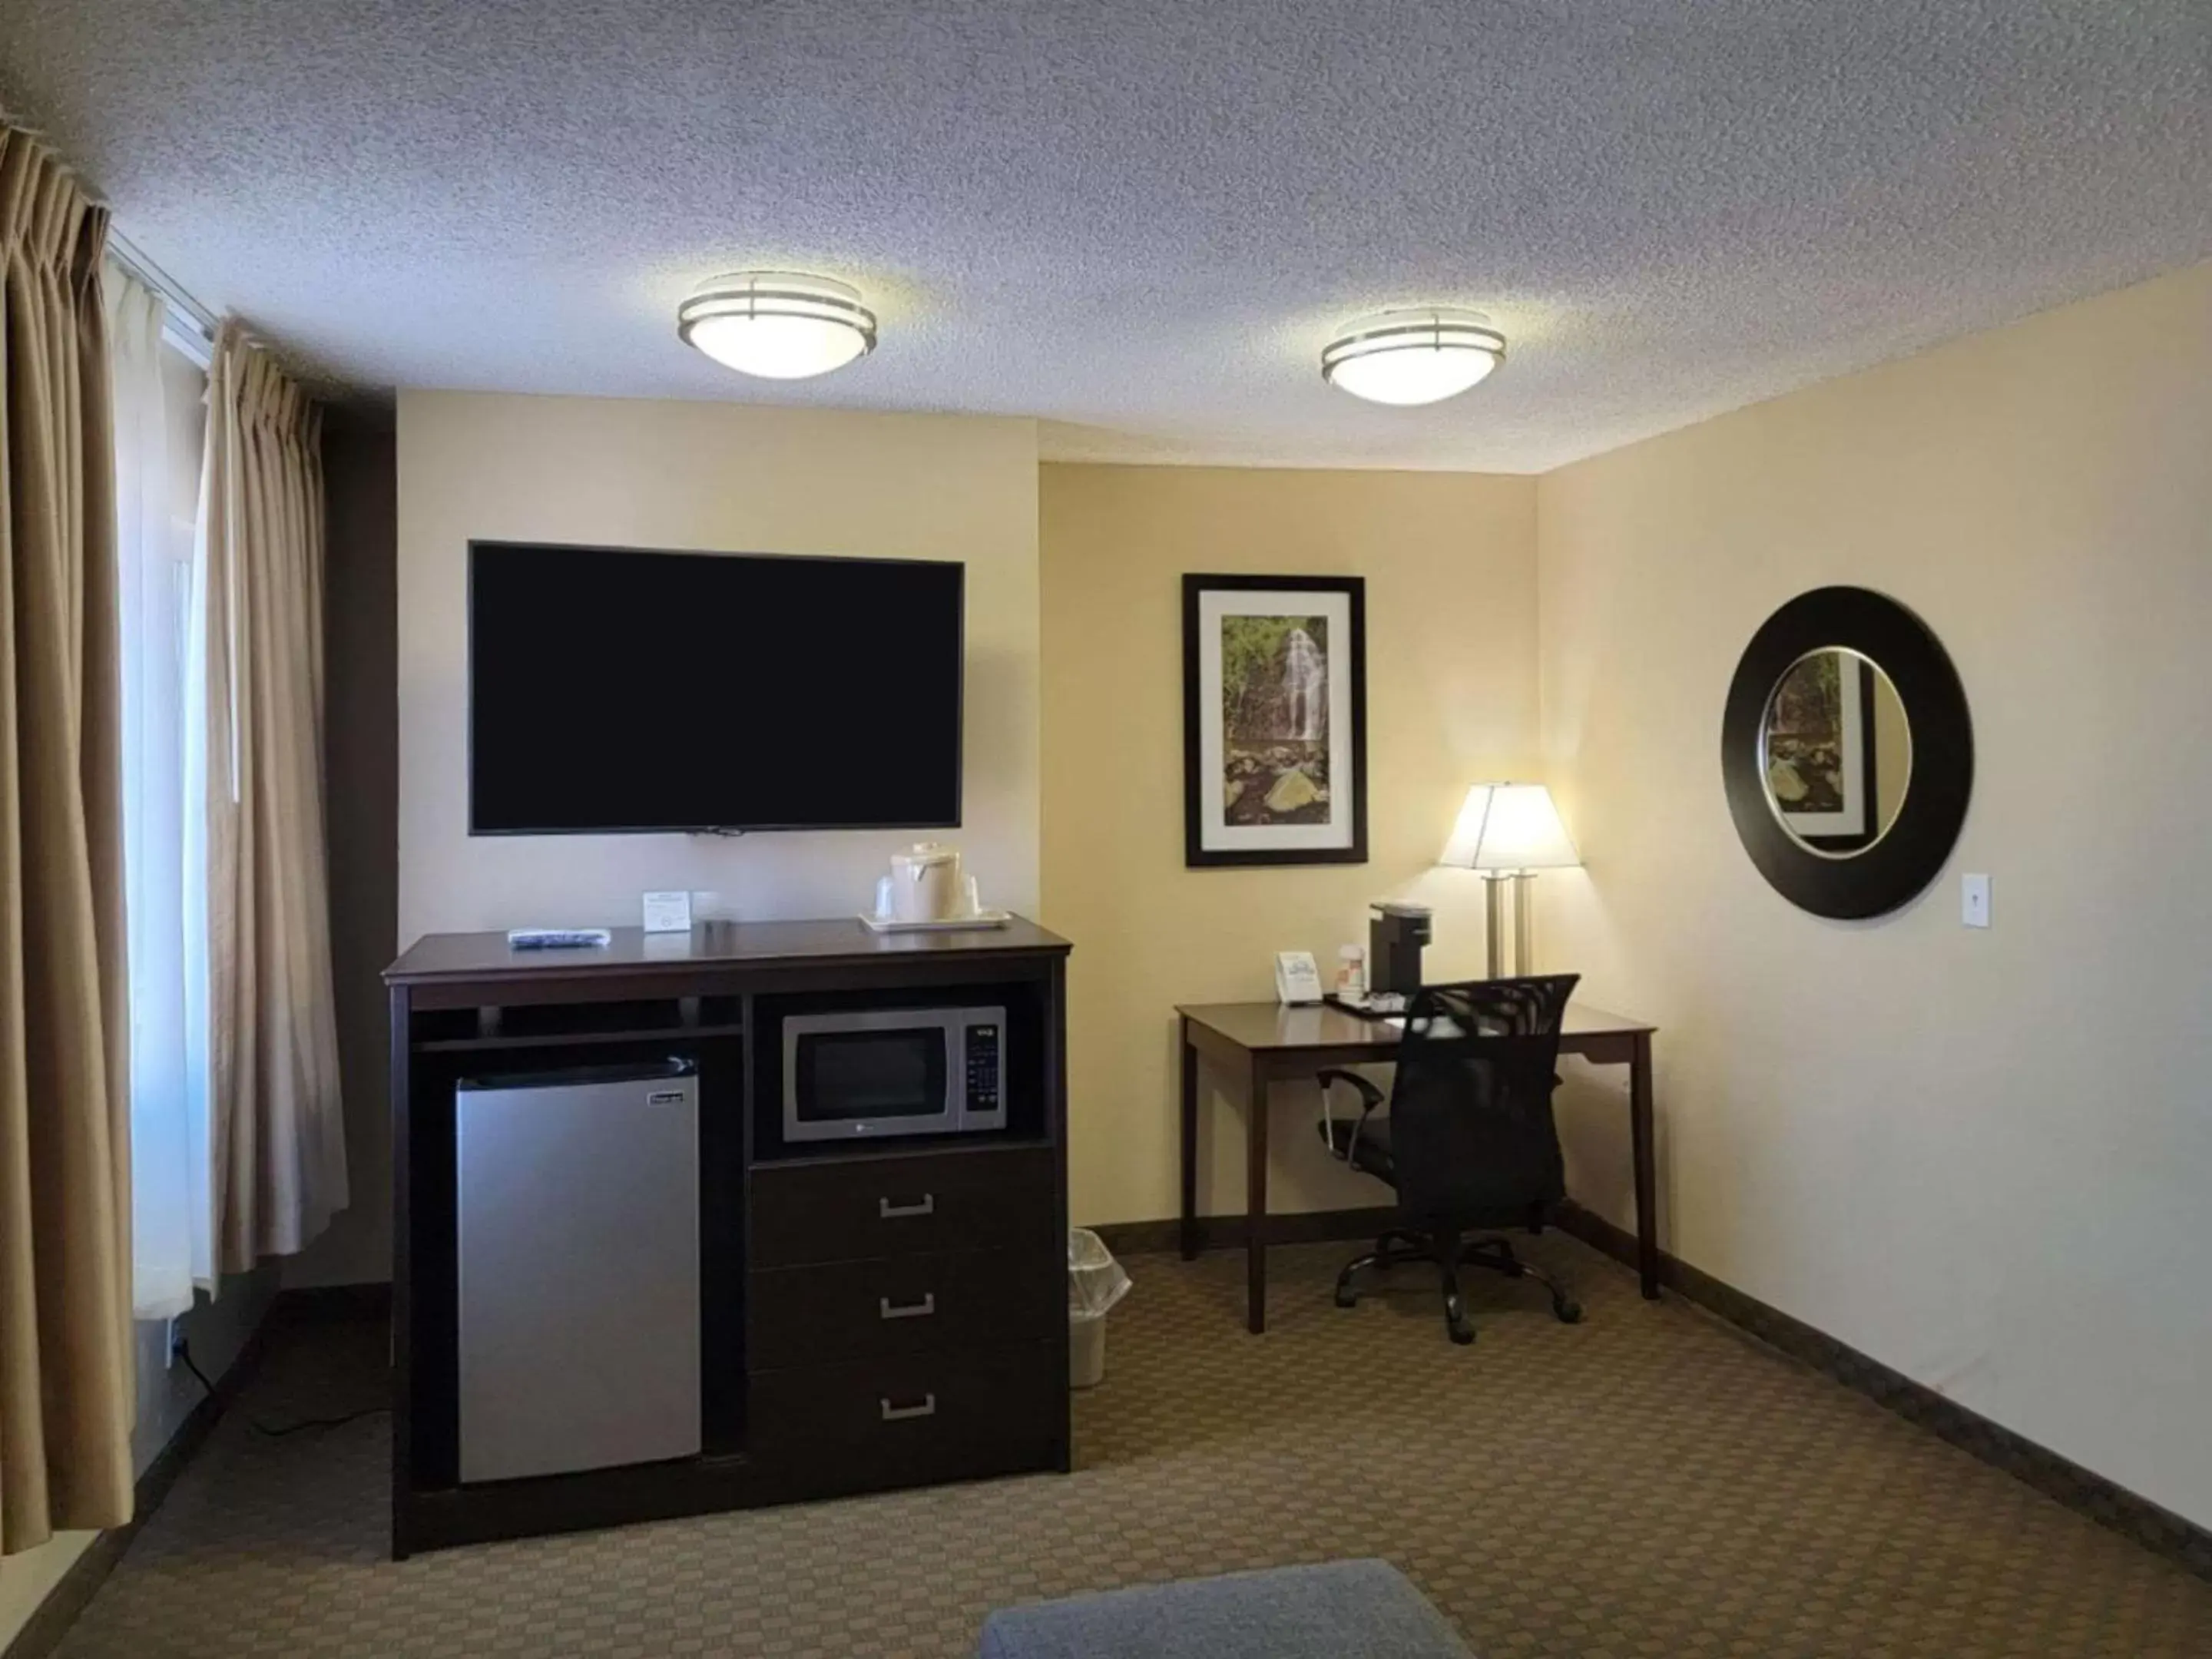 Bedroom, TV/Entertainment Center in Quality Inn